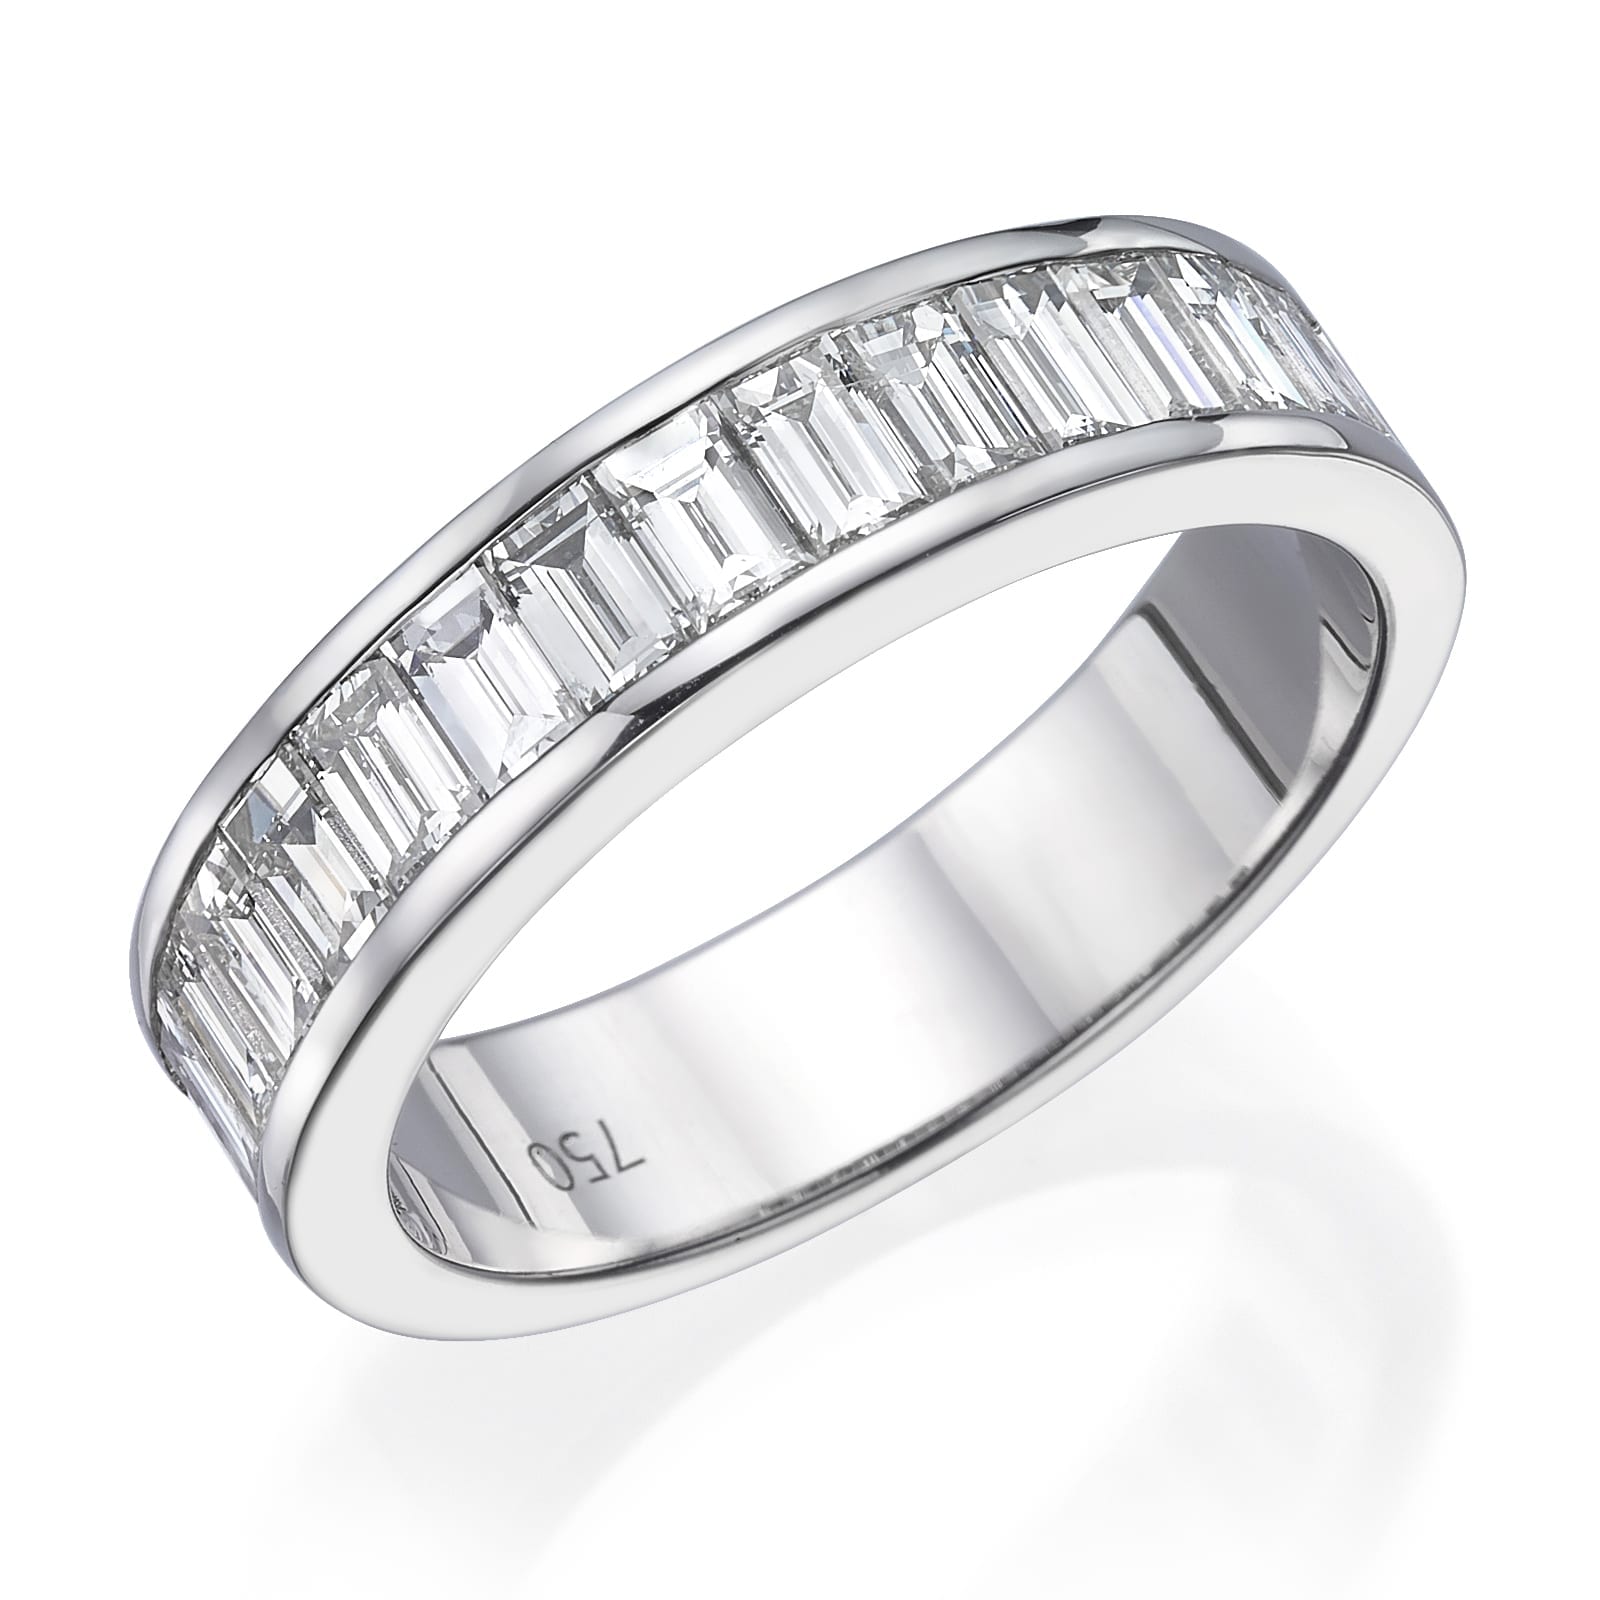 דגם טבעת יהלומים יוקרתי פטריס מעוטרת בשורה של יהלומים בחיתוך מלבני, המציגה תכשיט אלגנטי.